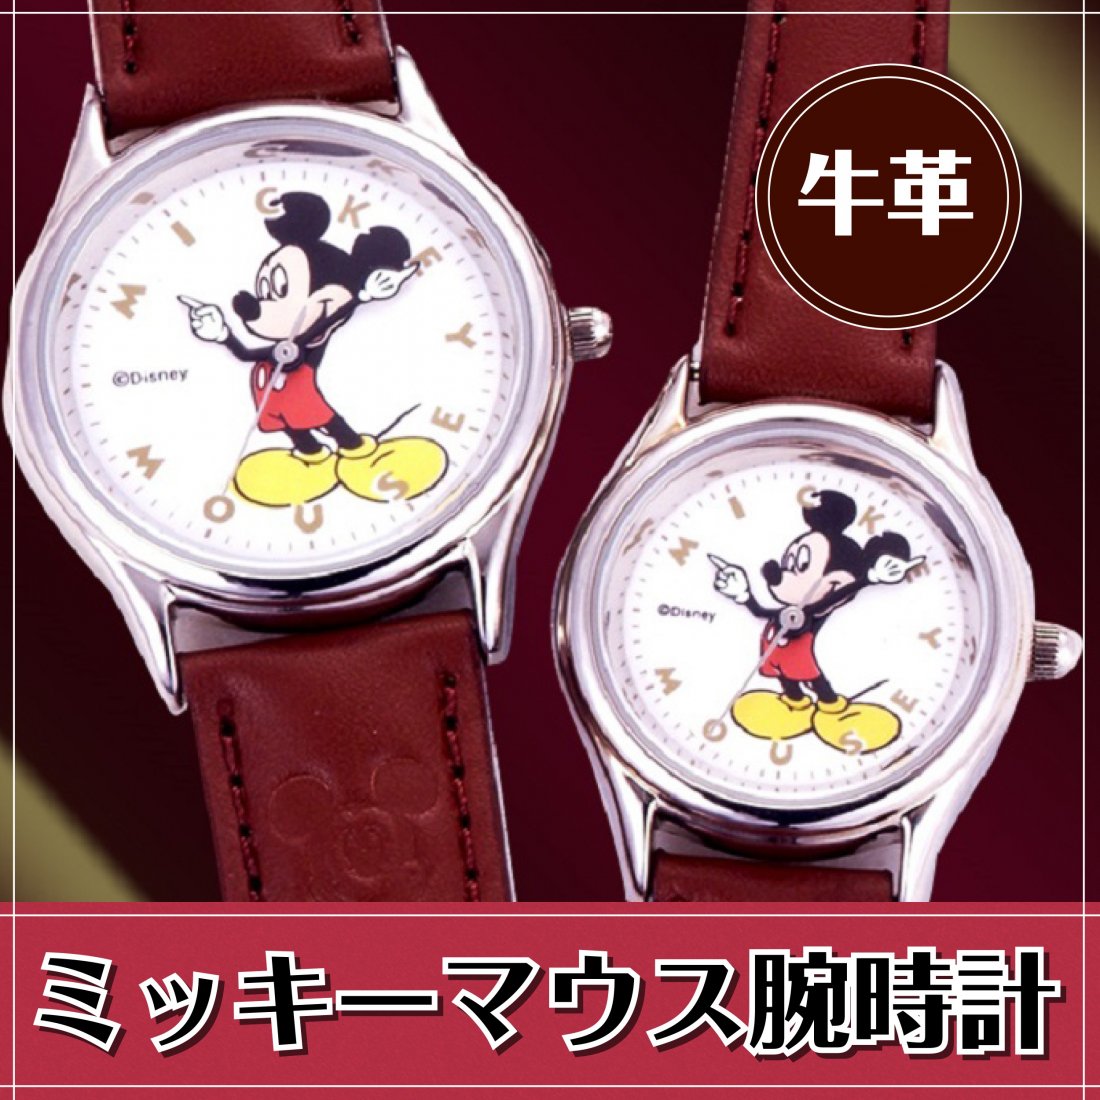 ディズニー ミッキーマウス 腕時計 - 時計